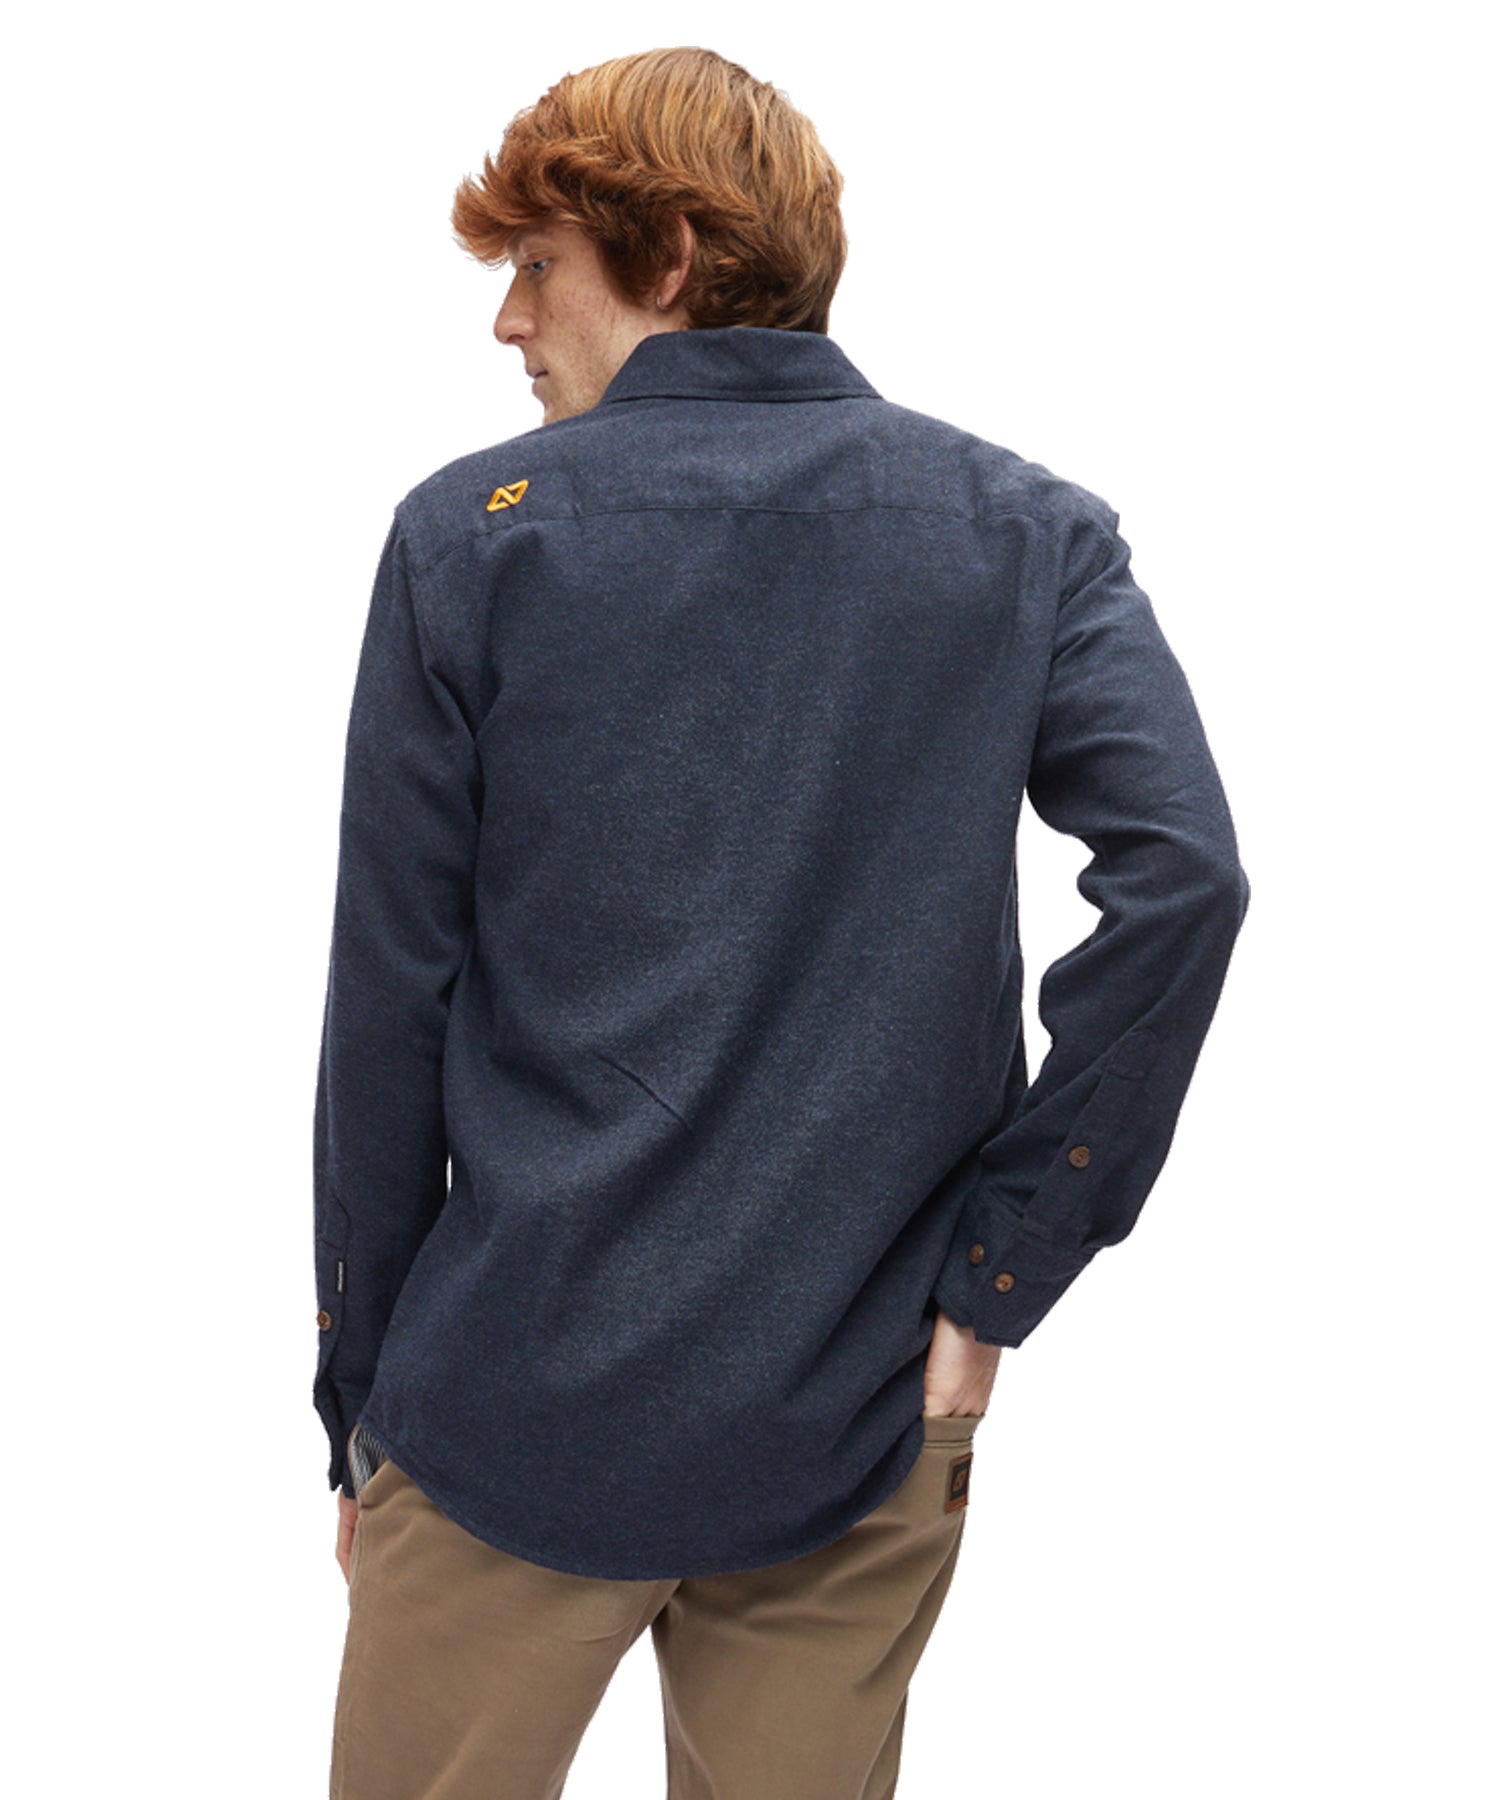 hydroponic-camisa-marine-navy-Franela 100% Algodón-cómoda suave-y-cálida-color azul-casual y elegante.